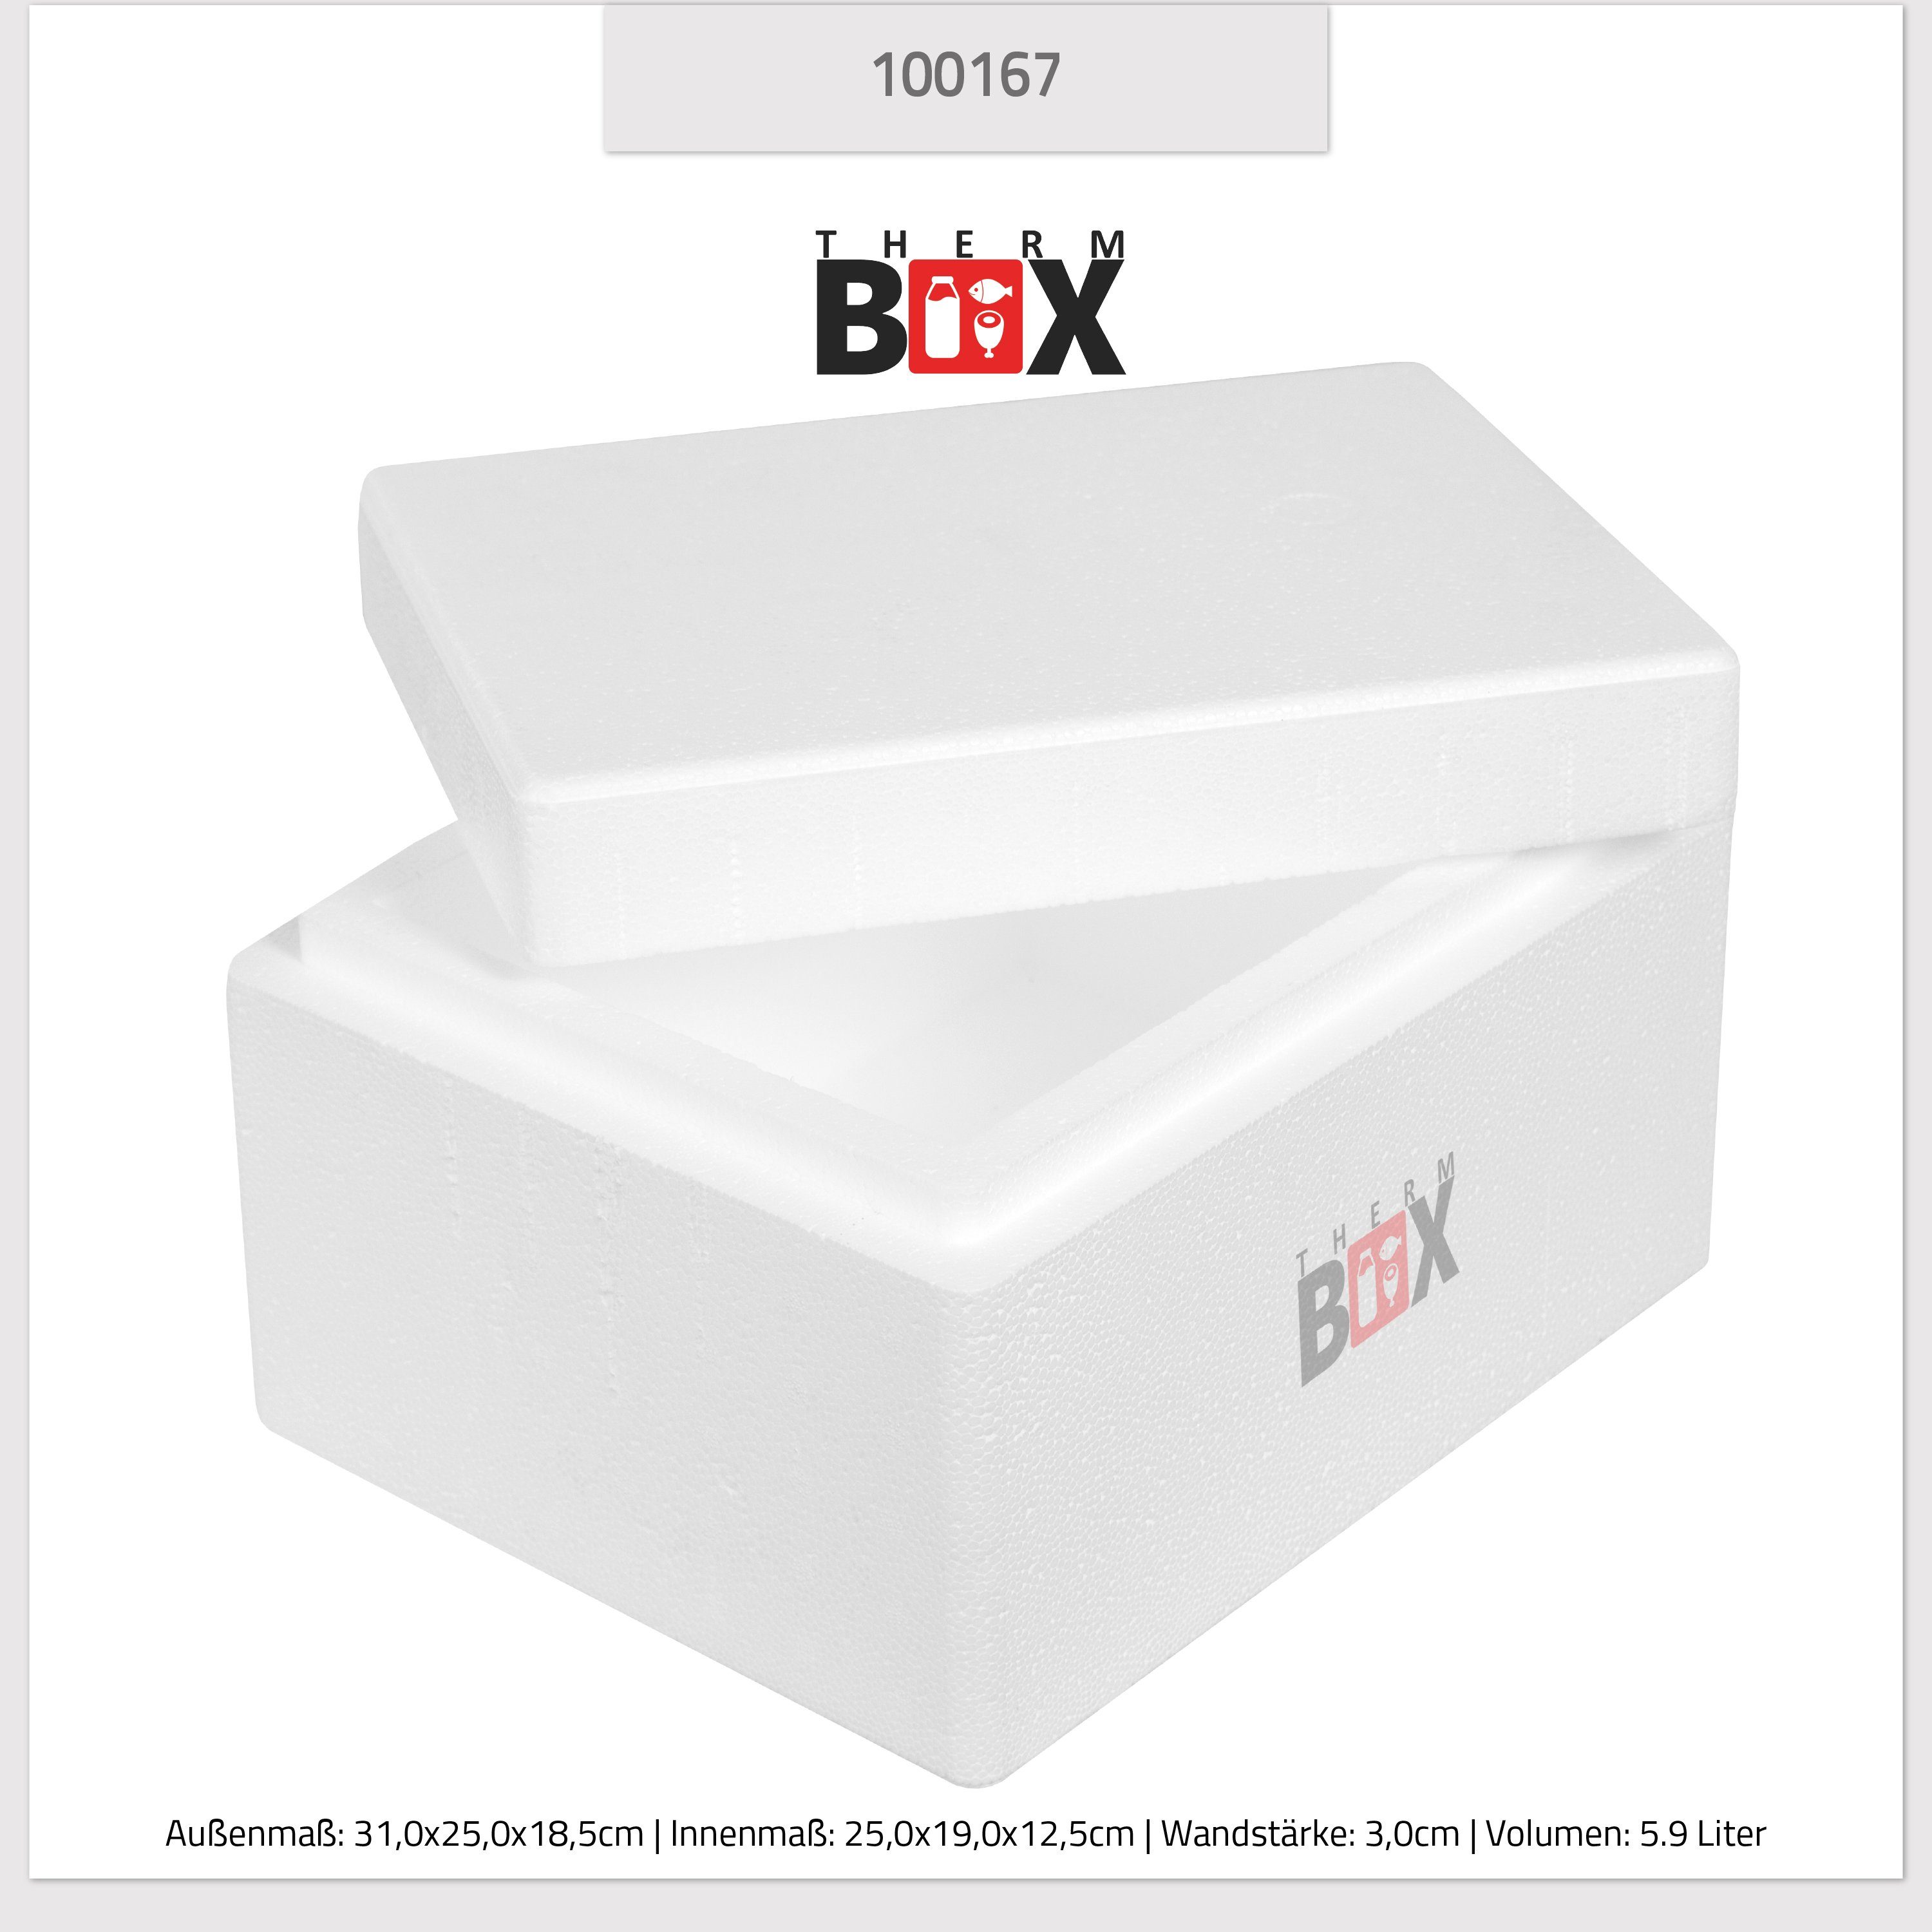 THERM-BOX Thermobehälter Styroporbox 5W Innen: Box 5,9L, mit Deckel Wand: Kühlbox Isolierbox 3cm Wiederverwendbar 0-tlg., (1, im 25x19x12cm Karton), Styropor-Verdichtet, Warmhaltebox Thermobox